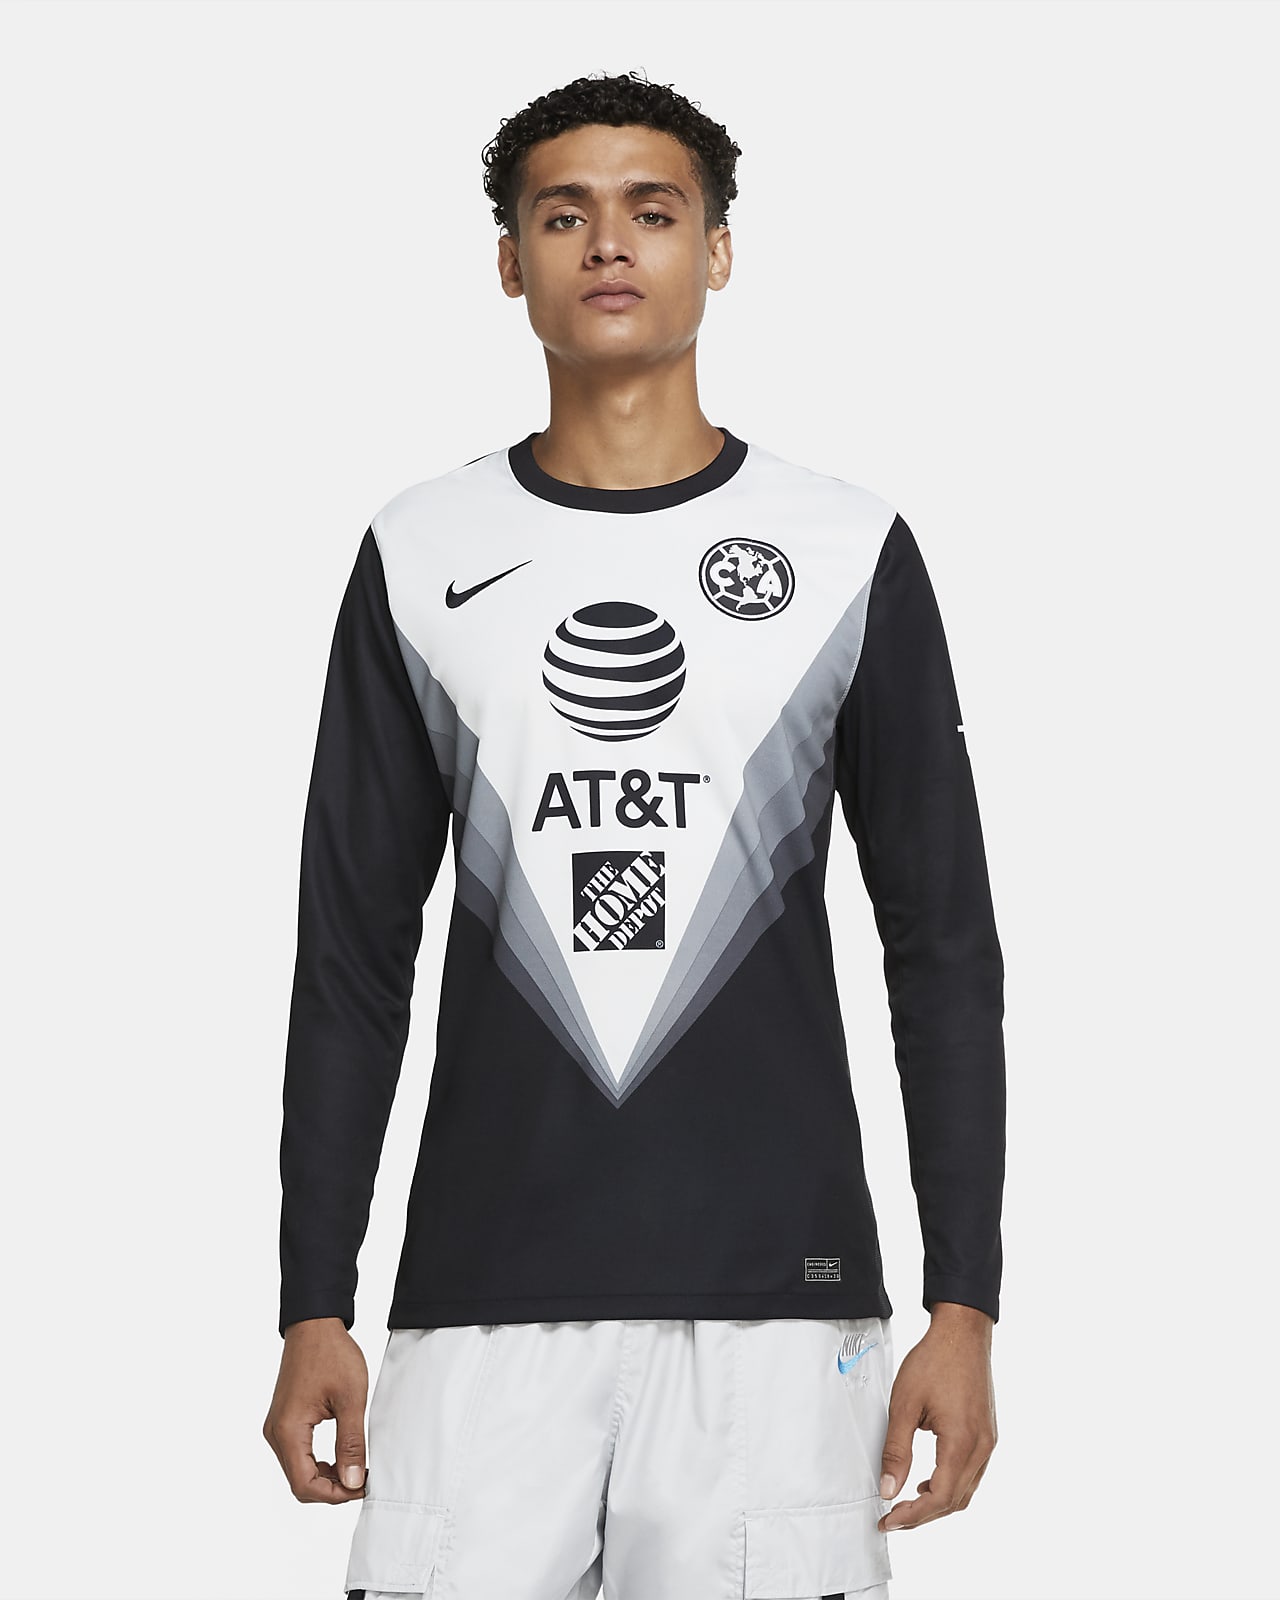 Camiseta de fútbol de arquero para hombre Stadium del Club América 2020/21.  Nike.com